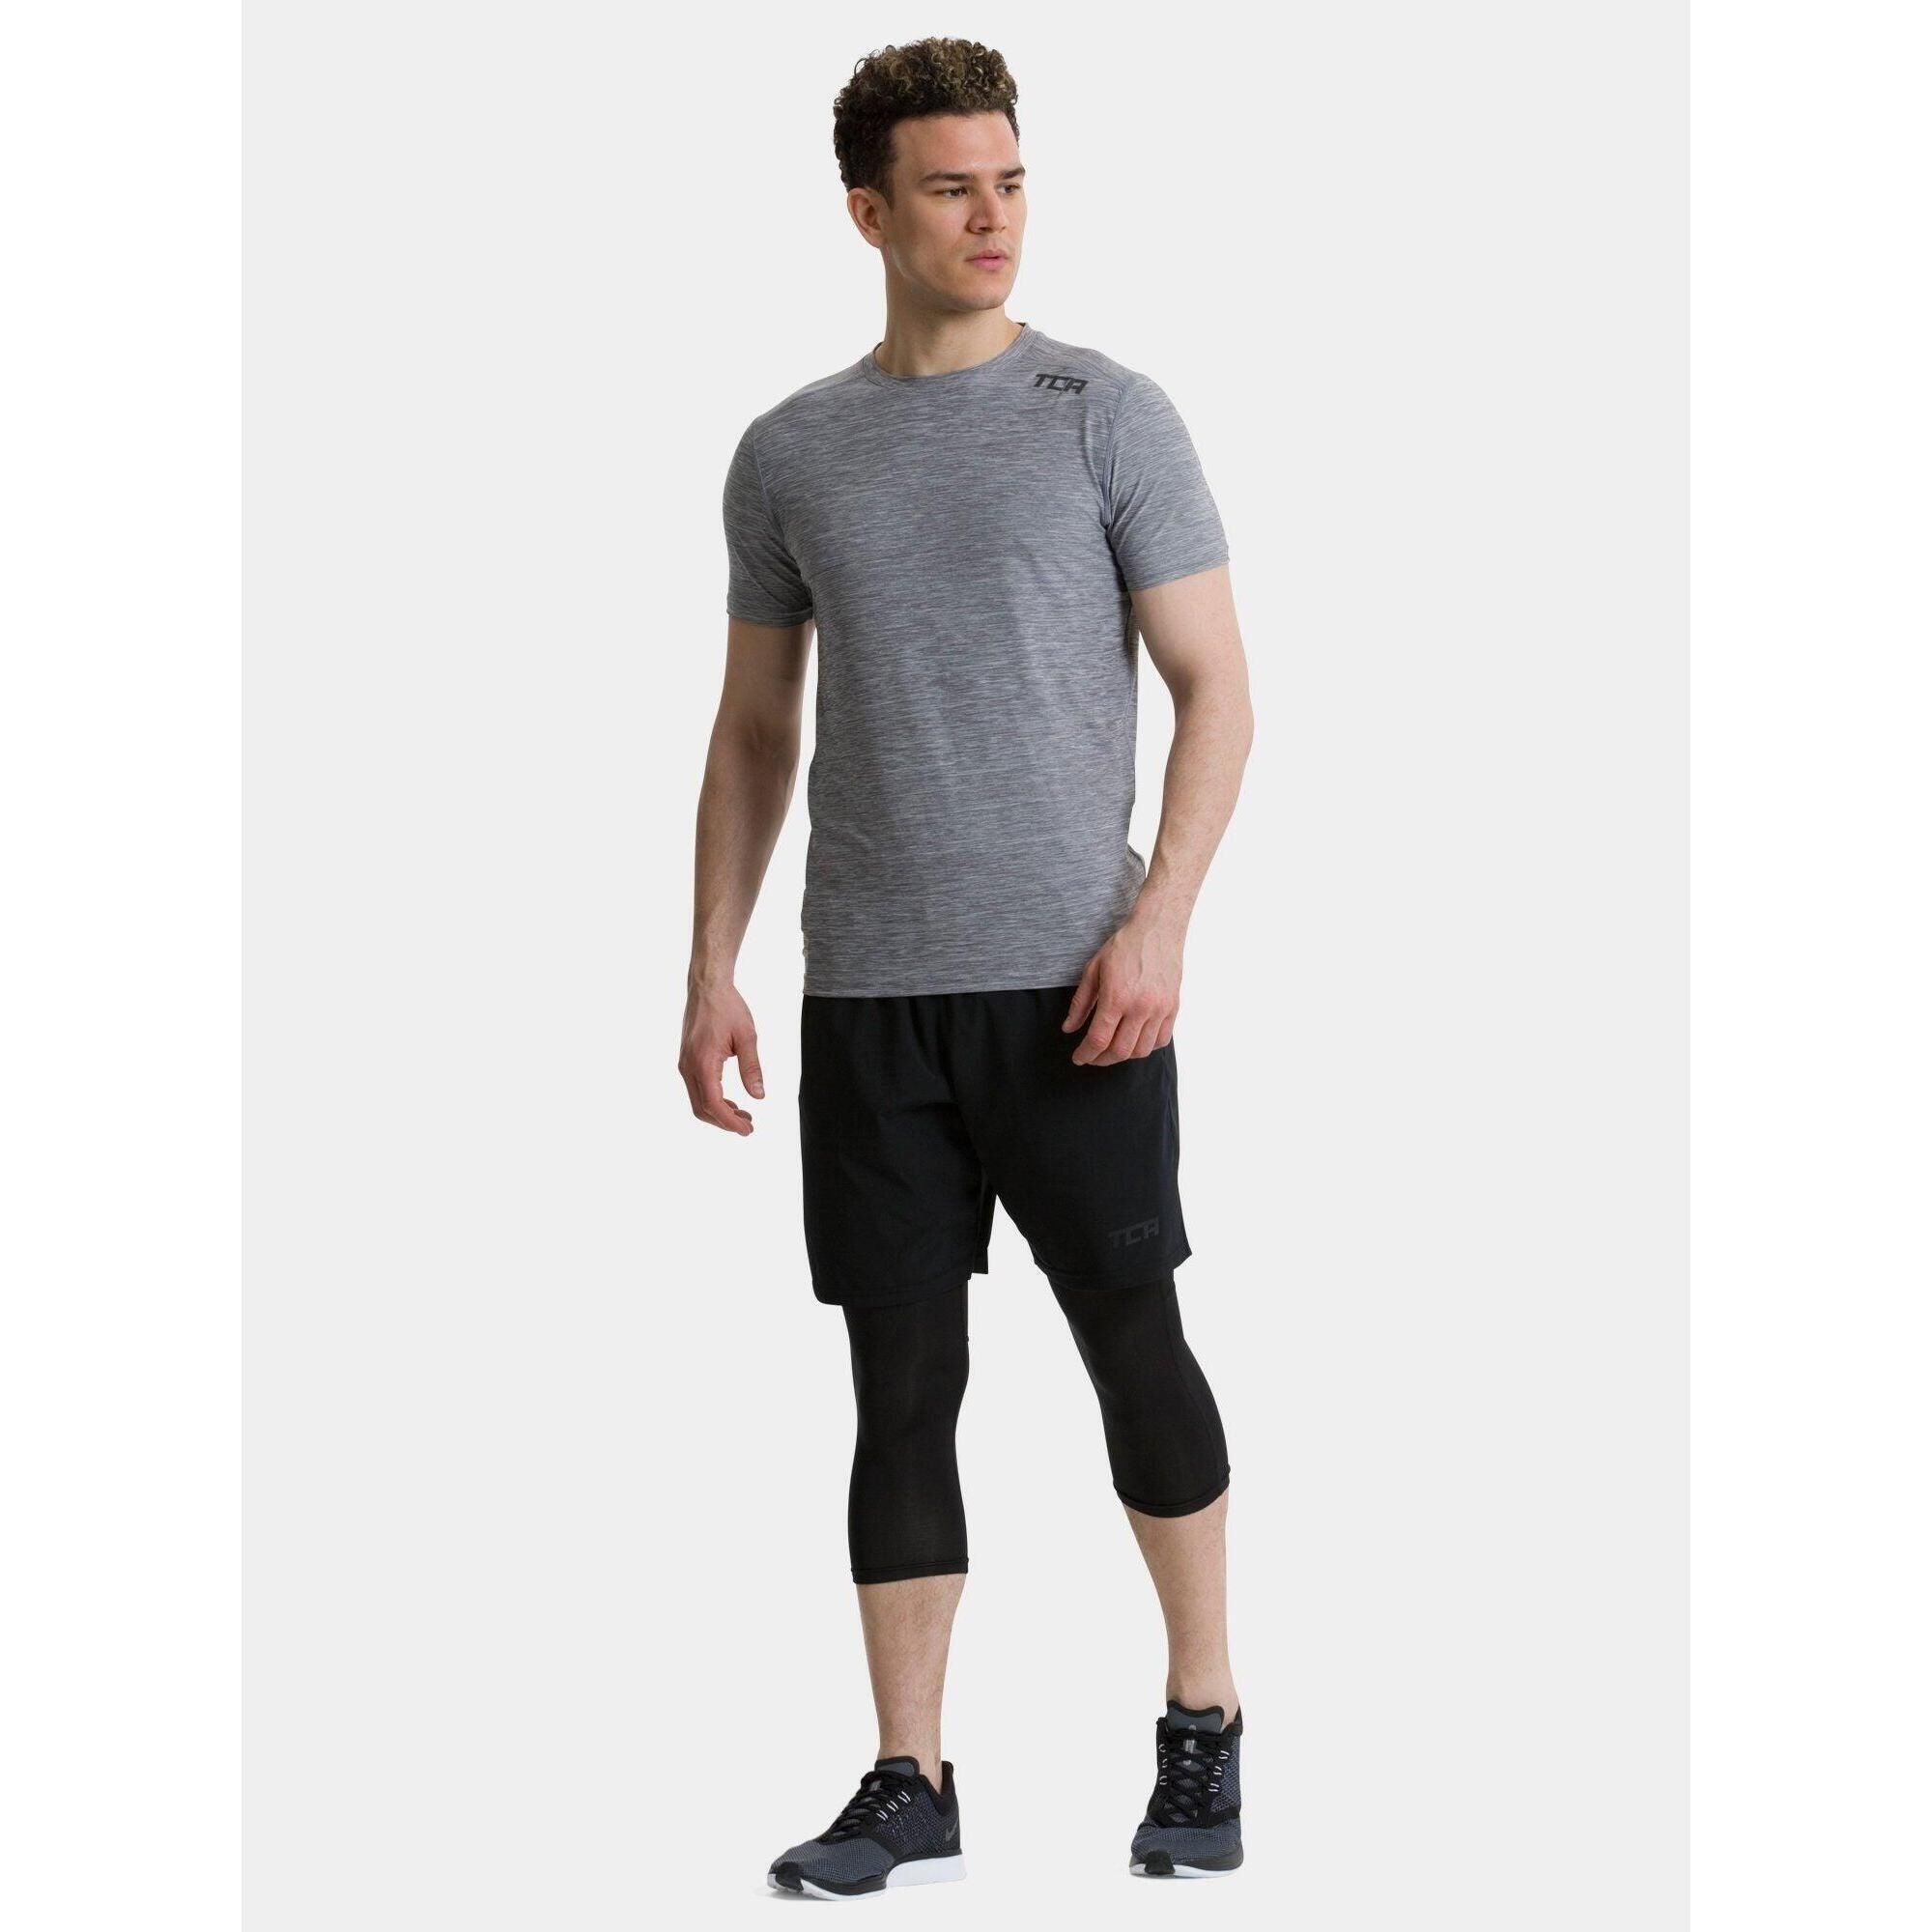 TCA Men’s Galaxy 4D-Stretch Running Gym T-Shirt - Cool Grey